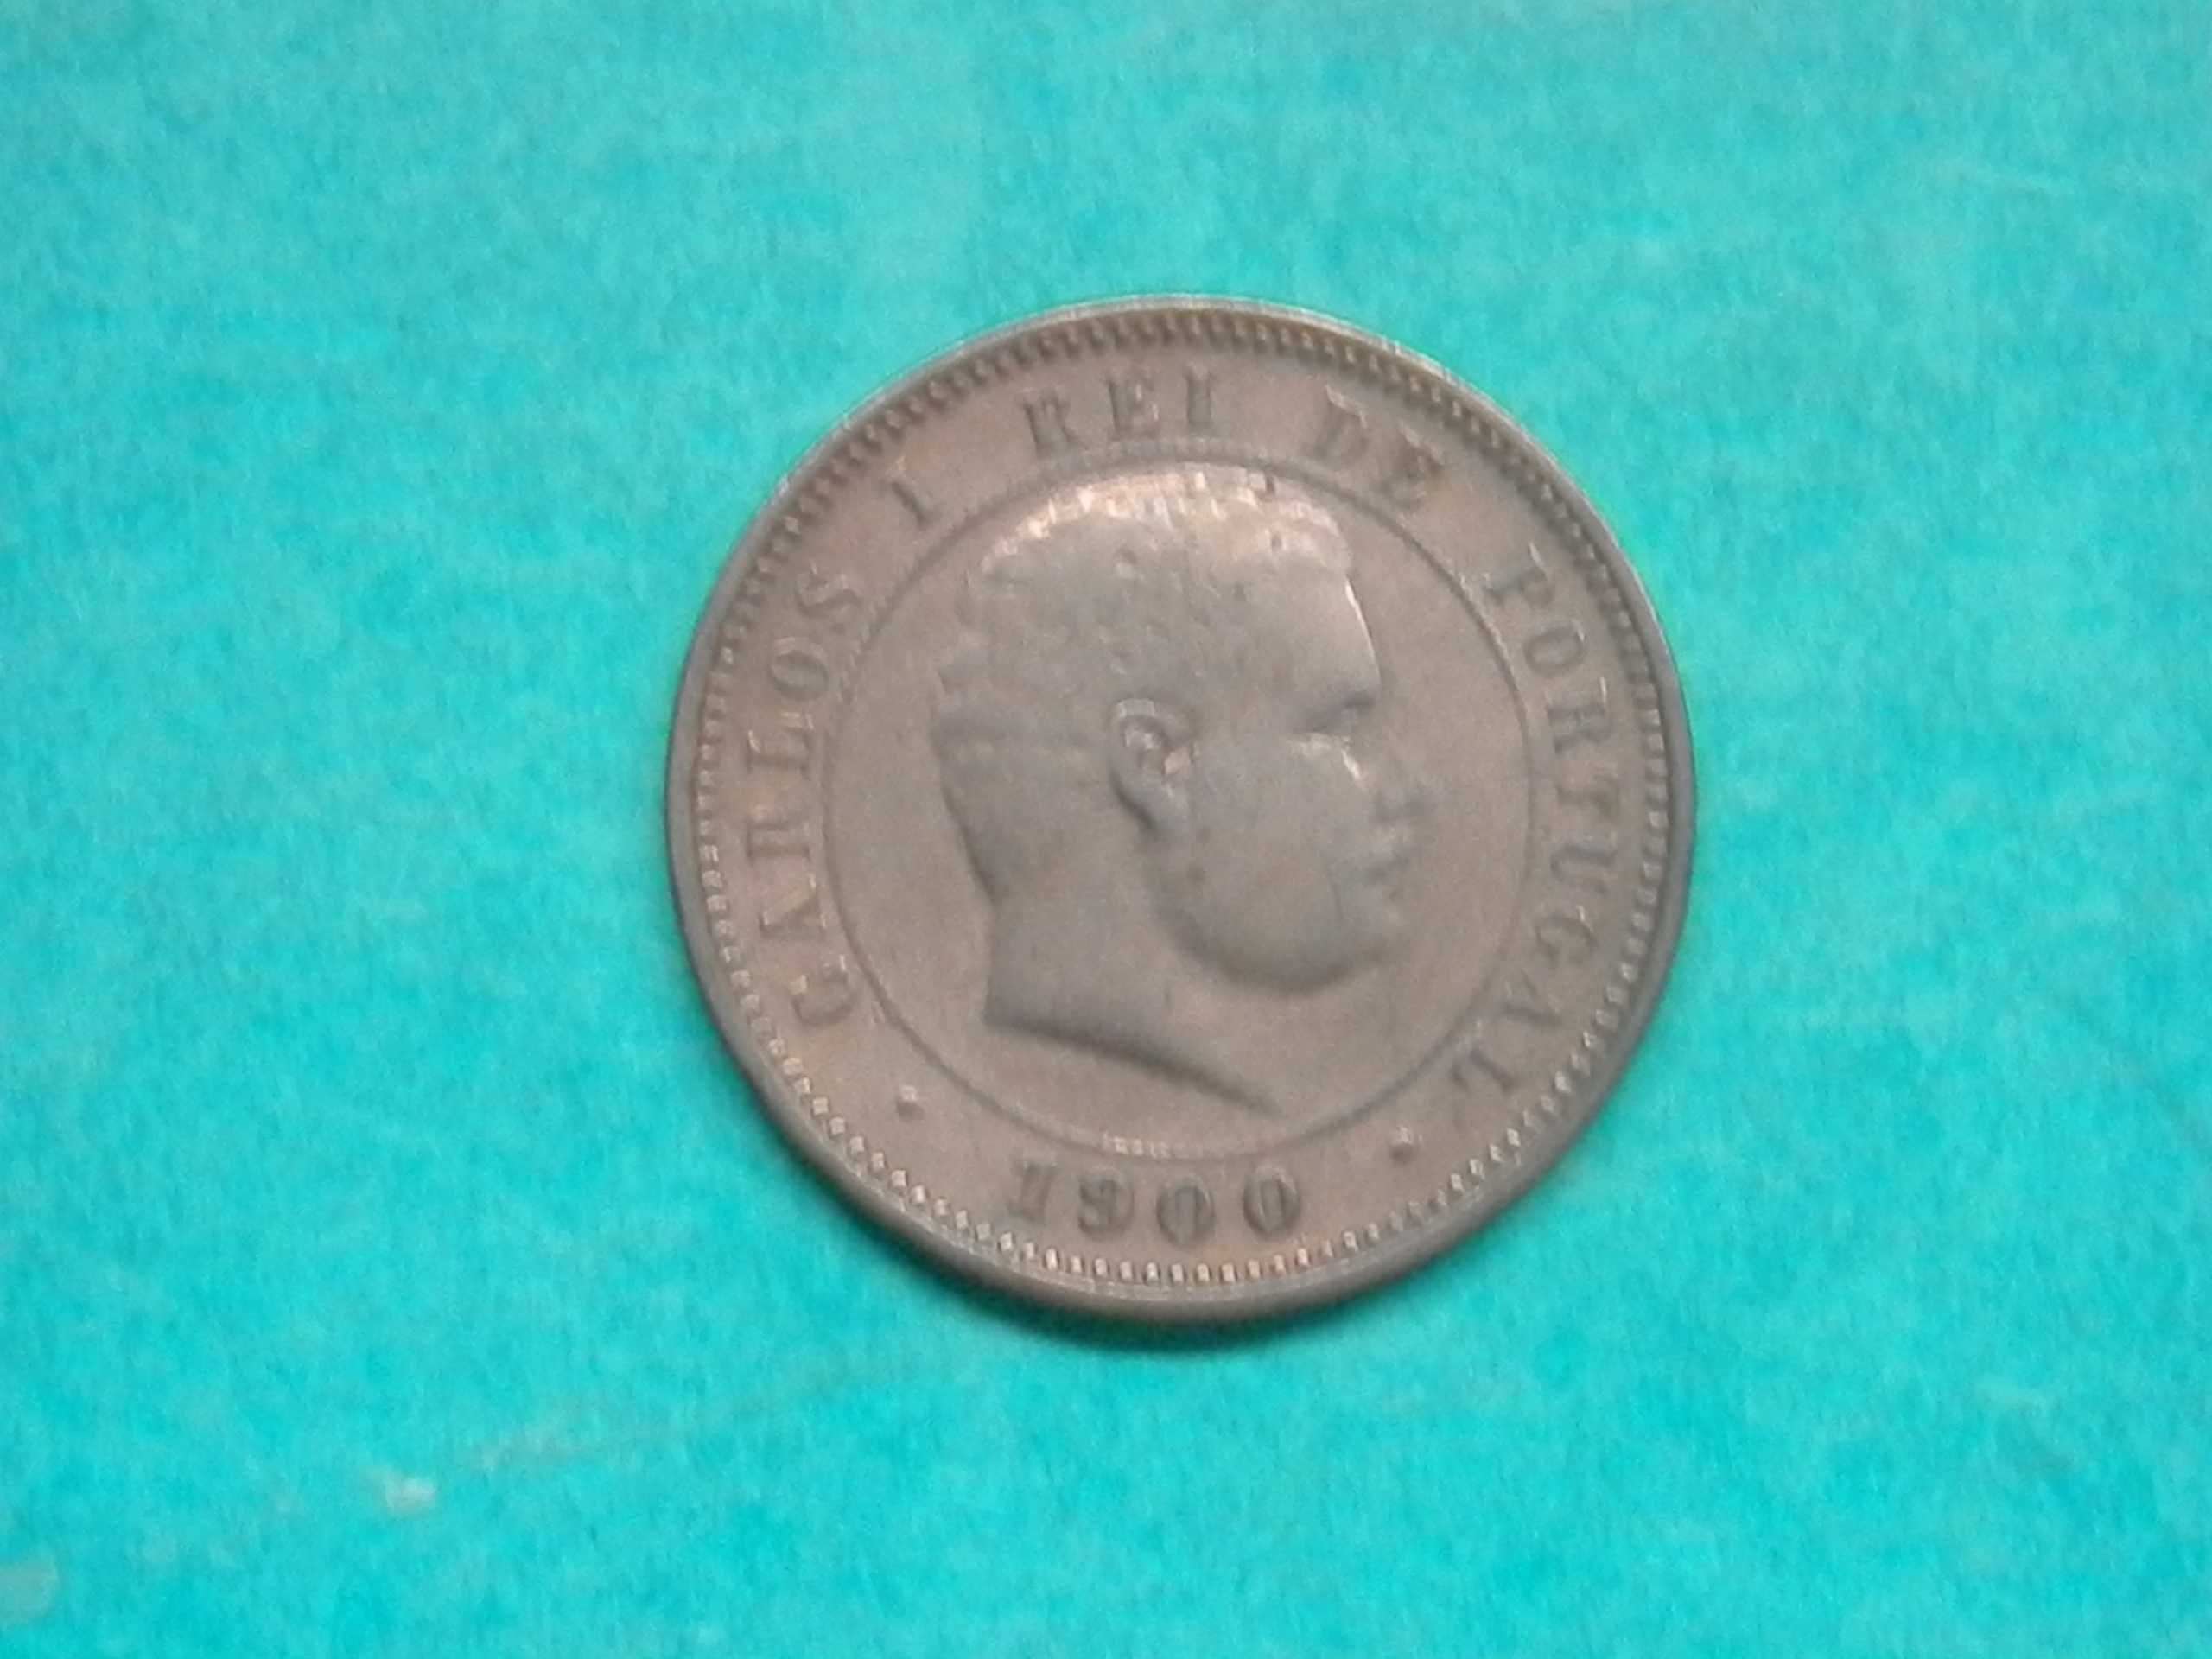 972 - Carlos I: 5 réis 1900 bronze, por 12,00